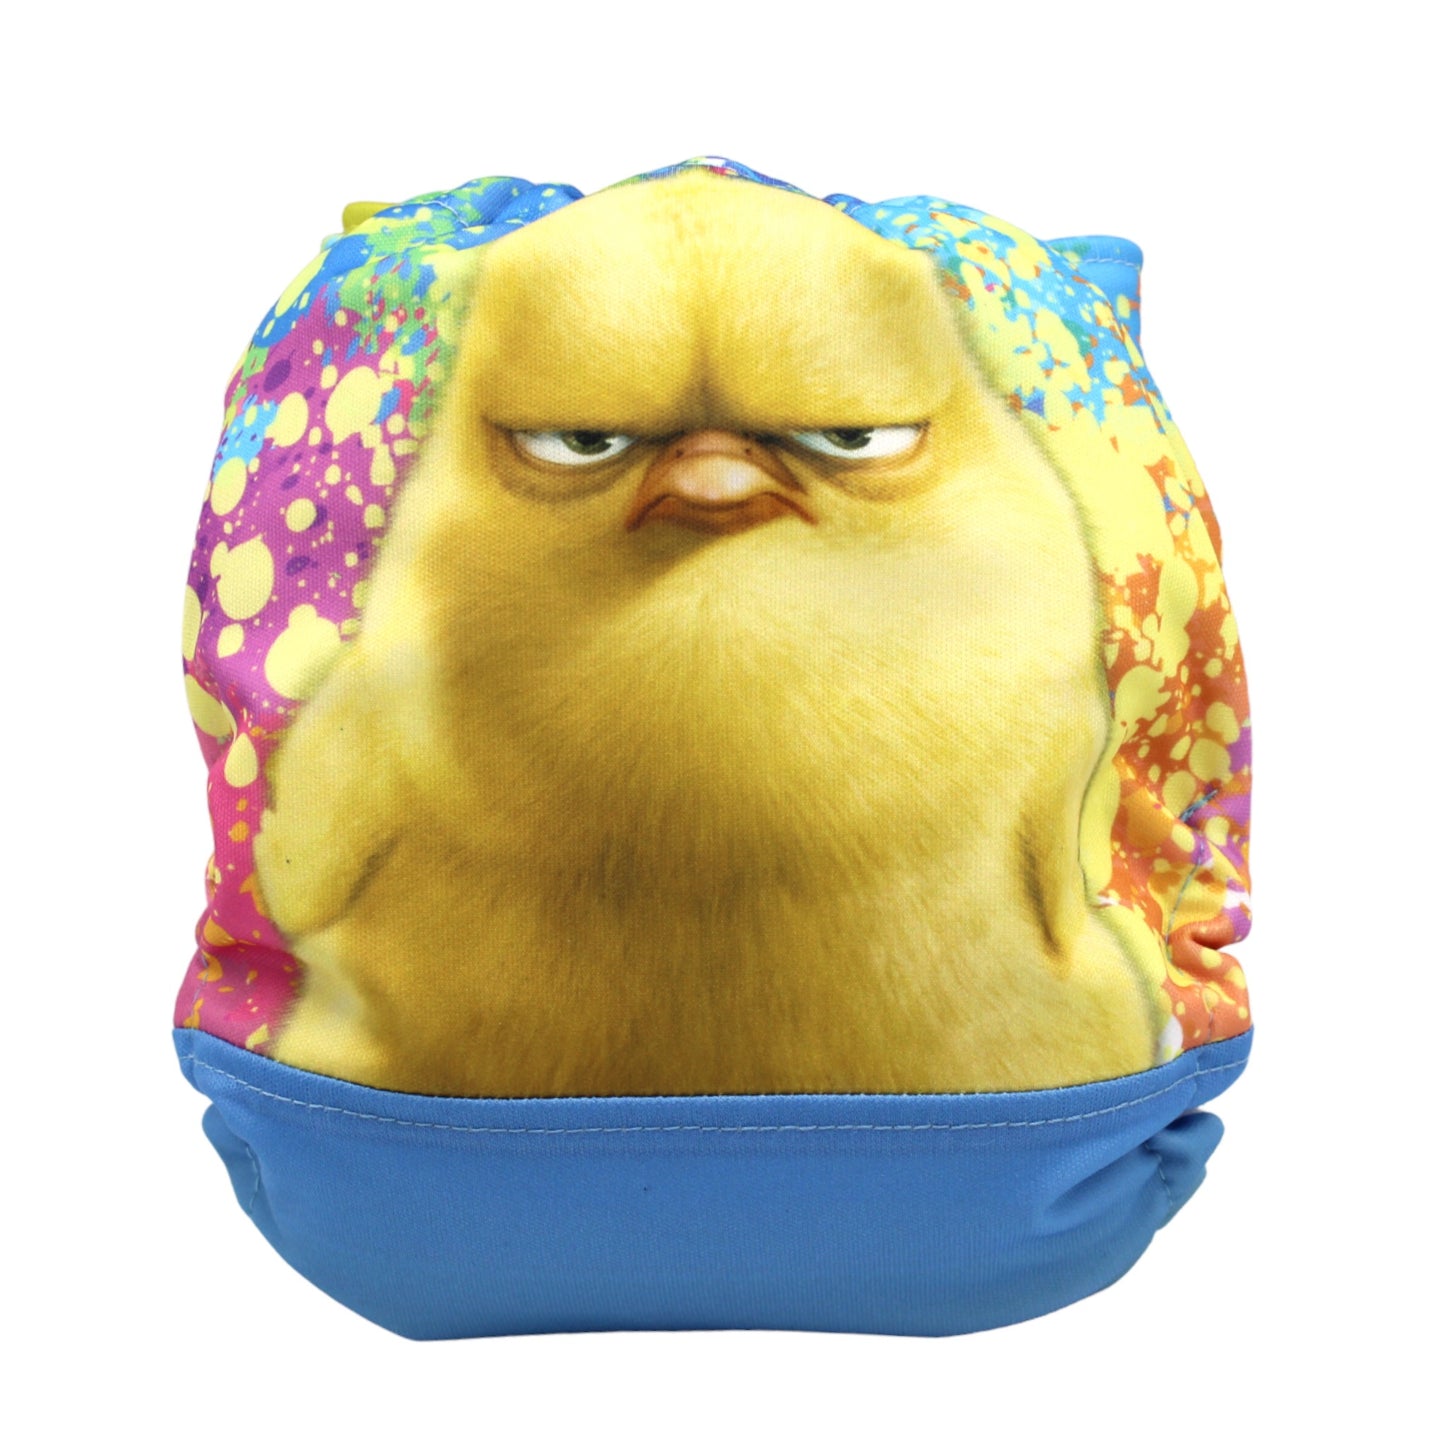 O/S diaper - Grumpy Chick